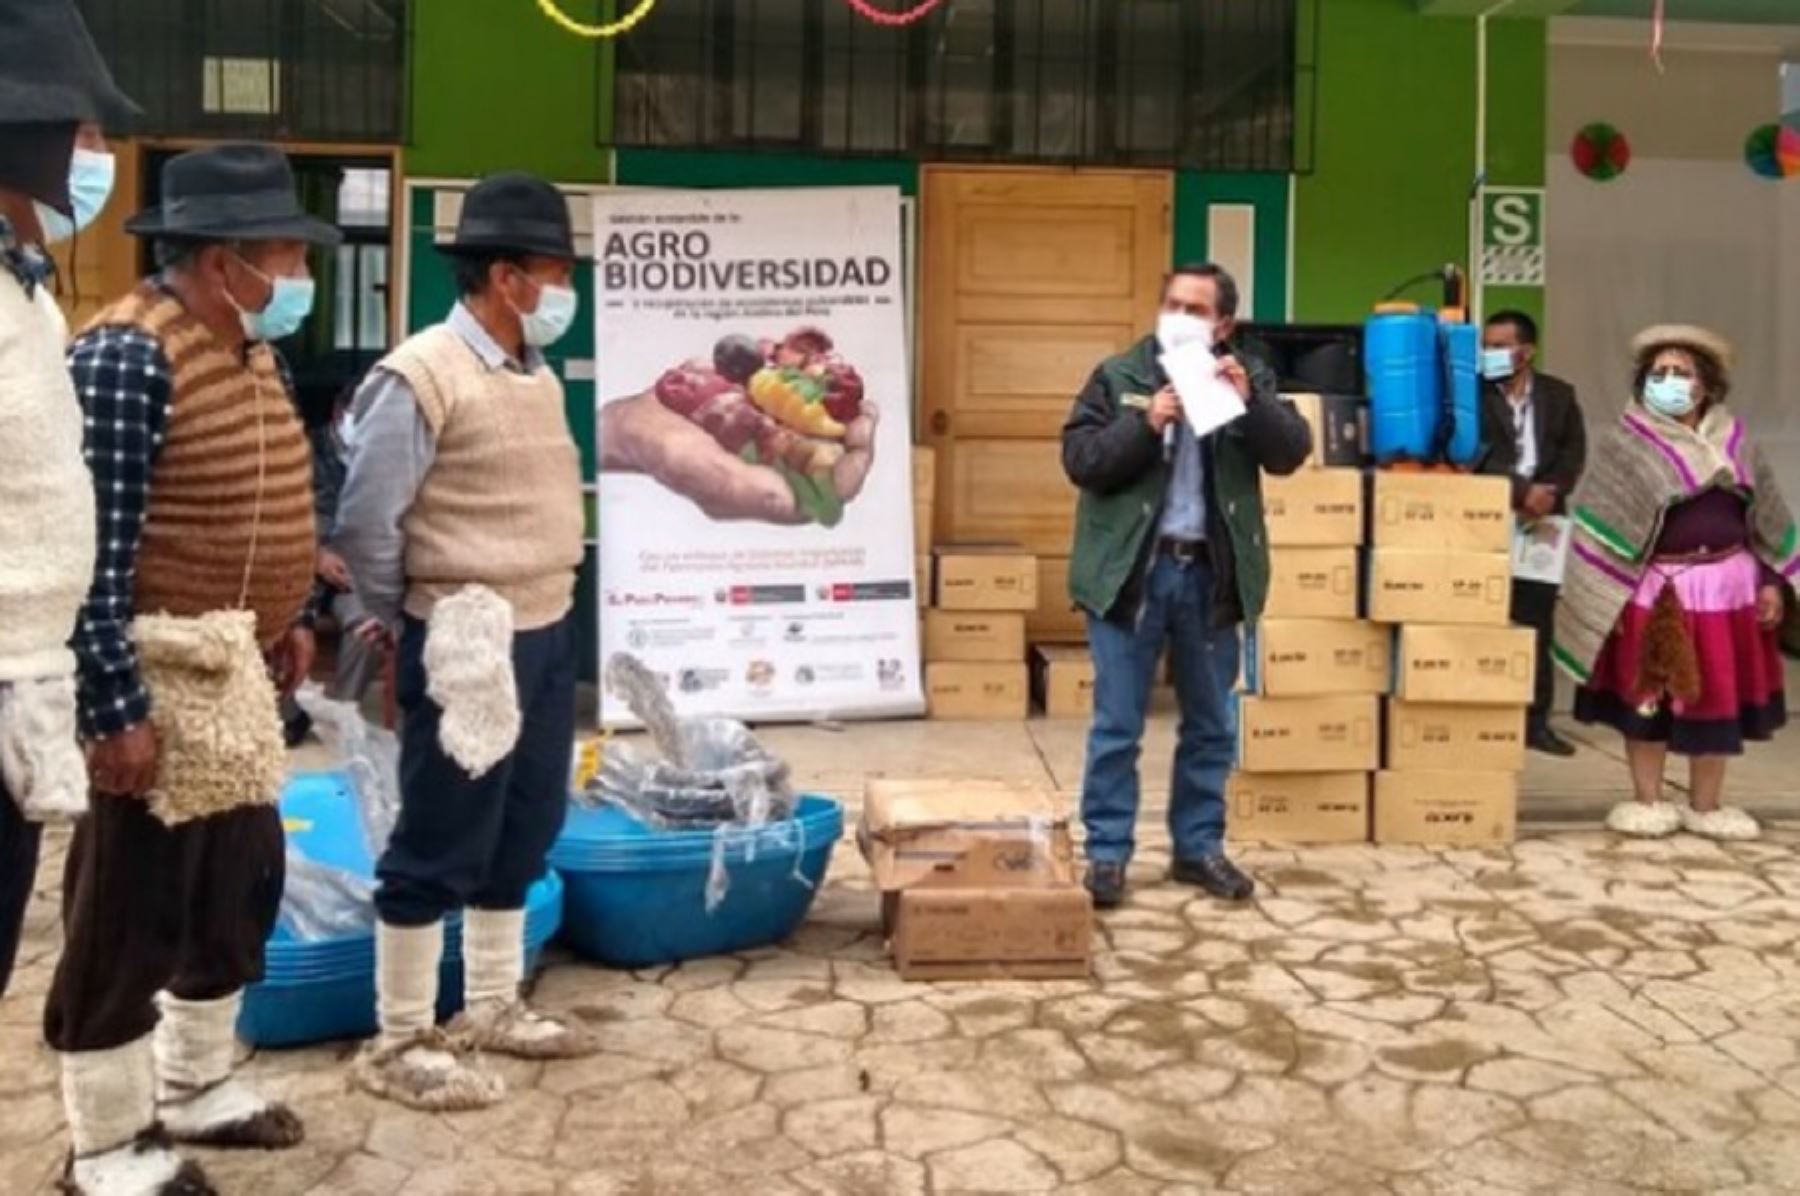 Un total de 182 familias agricultoras de 16 comunidades campesinas fueron reconocidas como “Agricultores del Bicentenario de Huancavelica”, en mérito a sus esfuerzos para garantizar la seguridad alimentaria y conservar la agrobiodiversidad, patrimonio genético del Perú. Foto: Ministerio del Ambiente